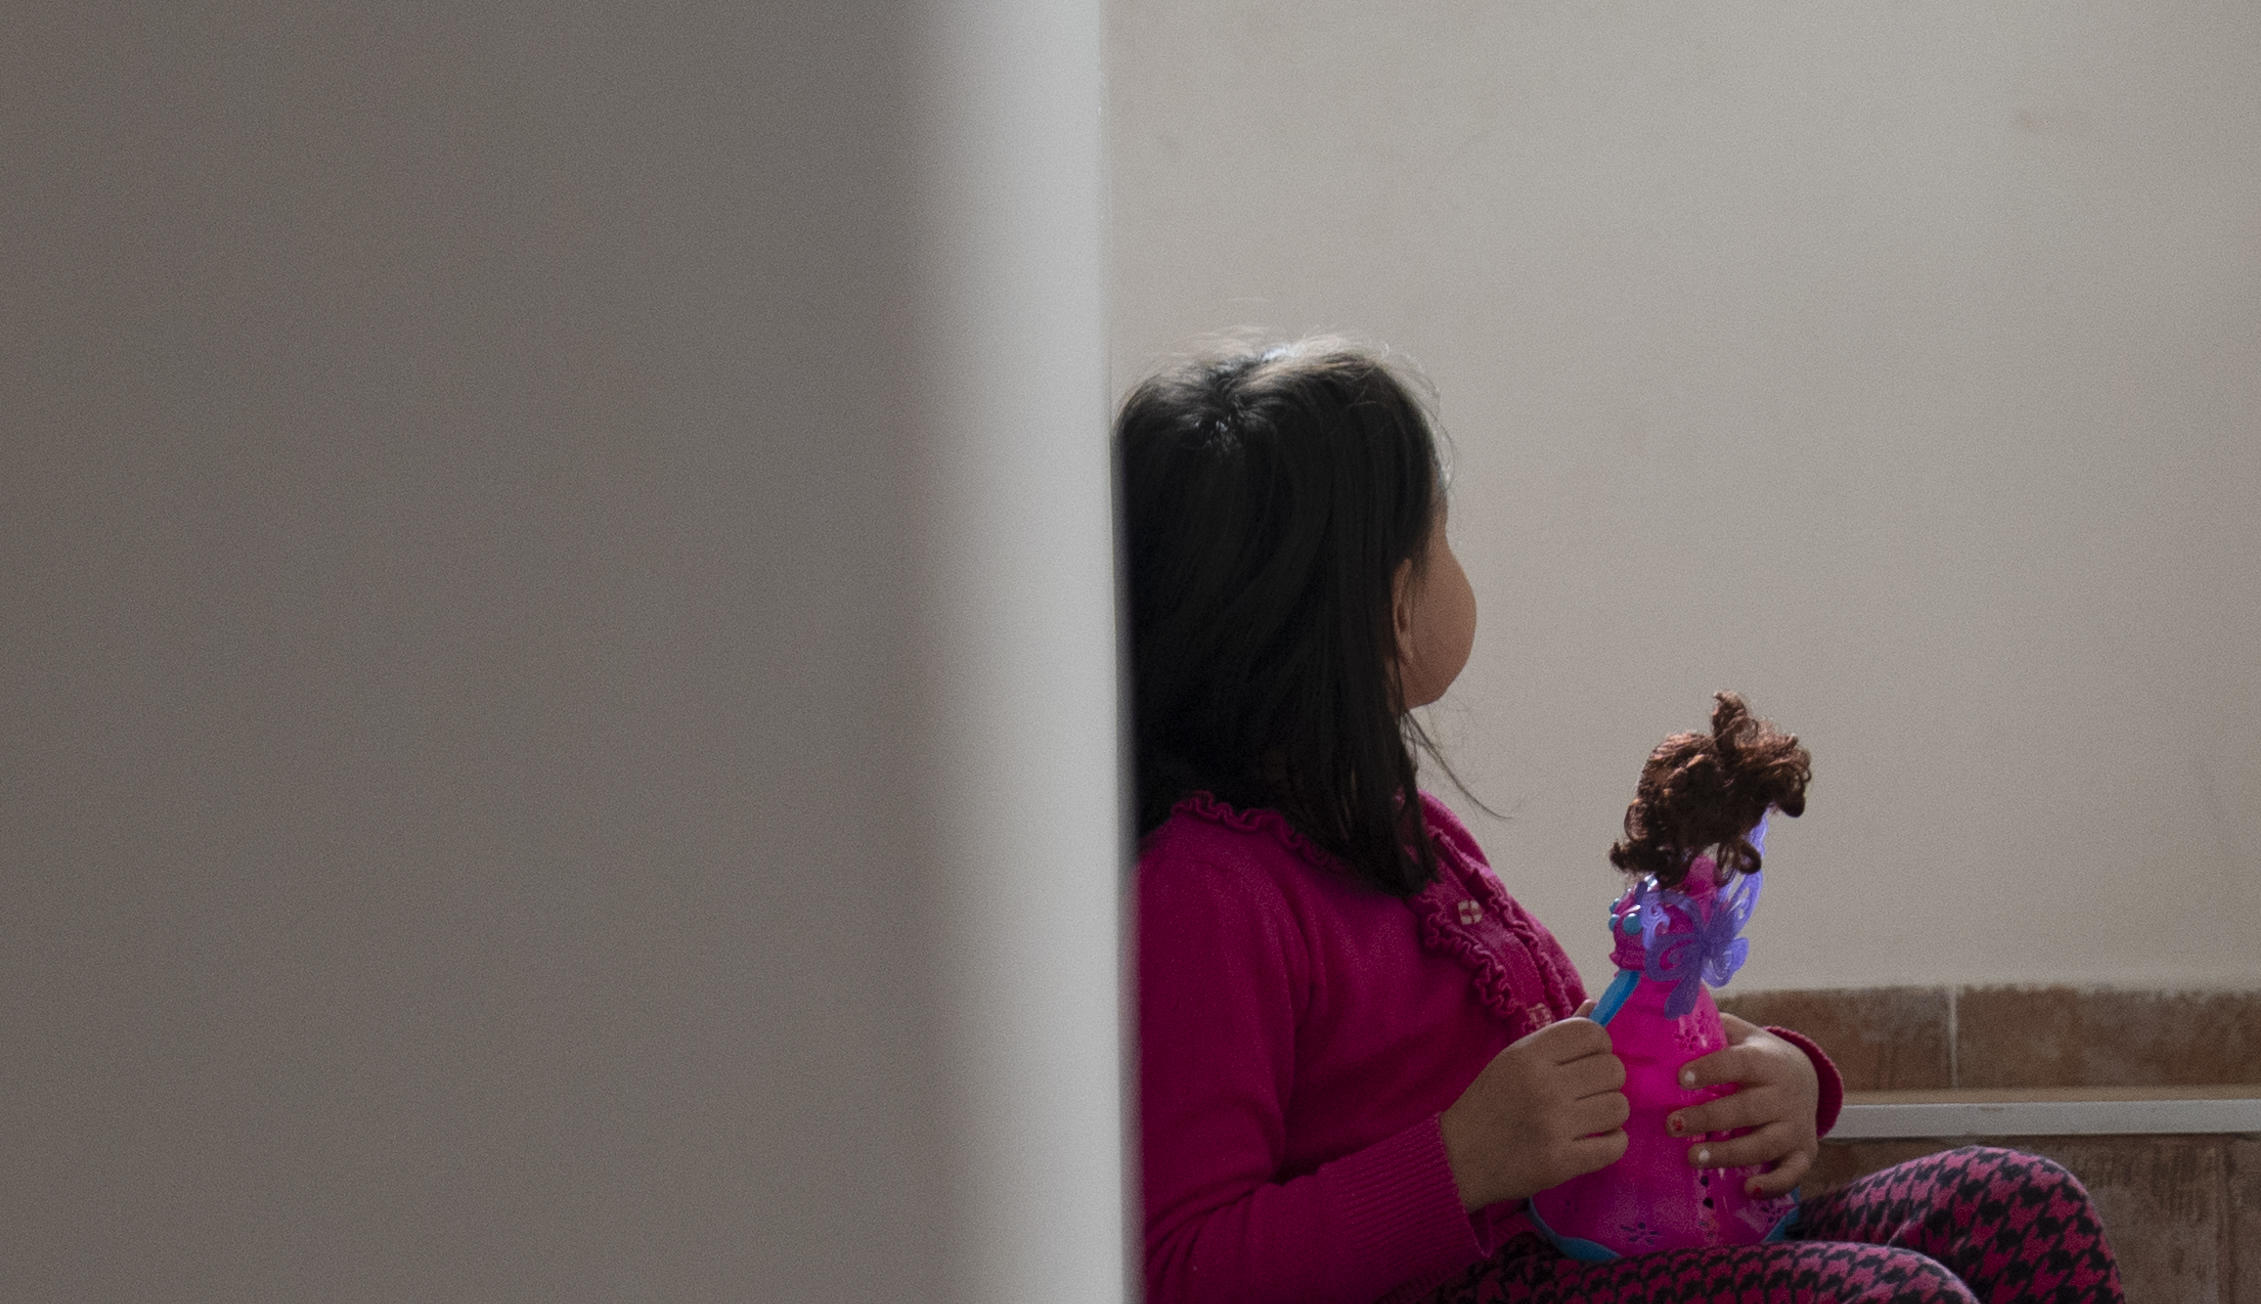 Lita jente lener seg inntil en vegg og holder dukken sin i hånda. Foto: Katerina Ilievska